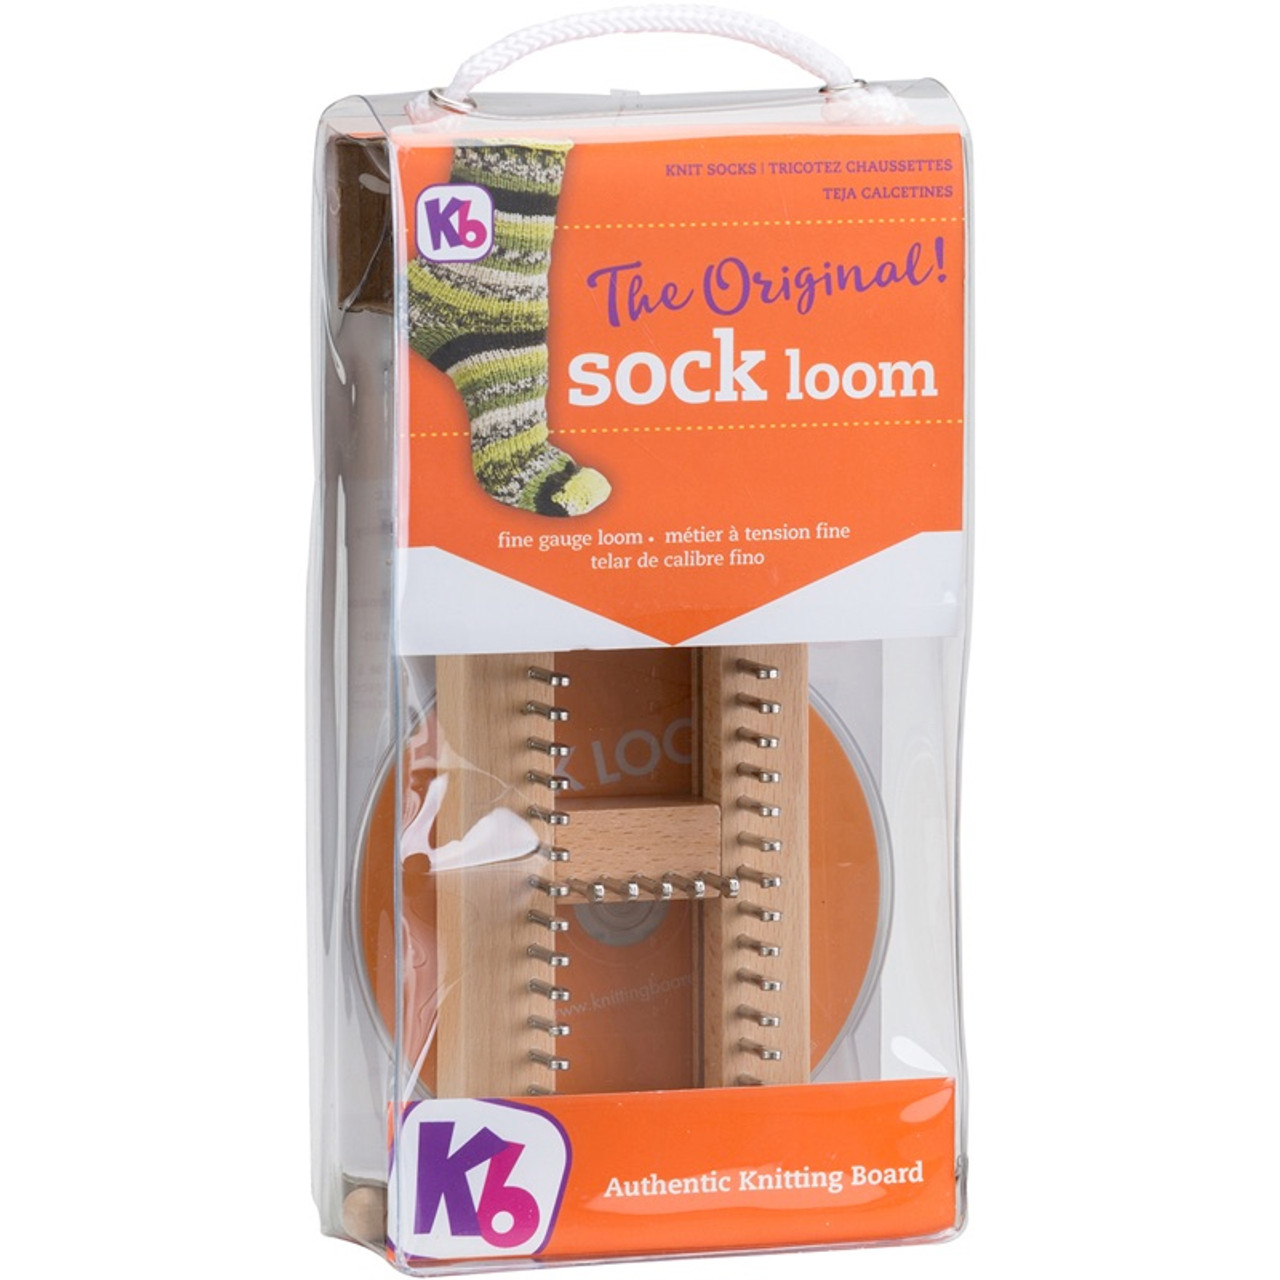 KB Authentic Hardwood Knitting Board Sock Loom 2 Adjustable KB4465